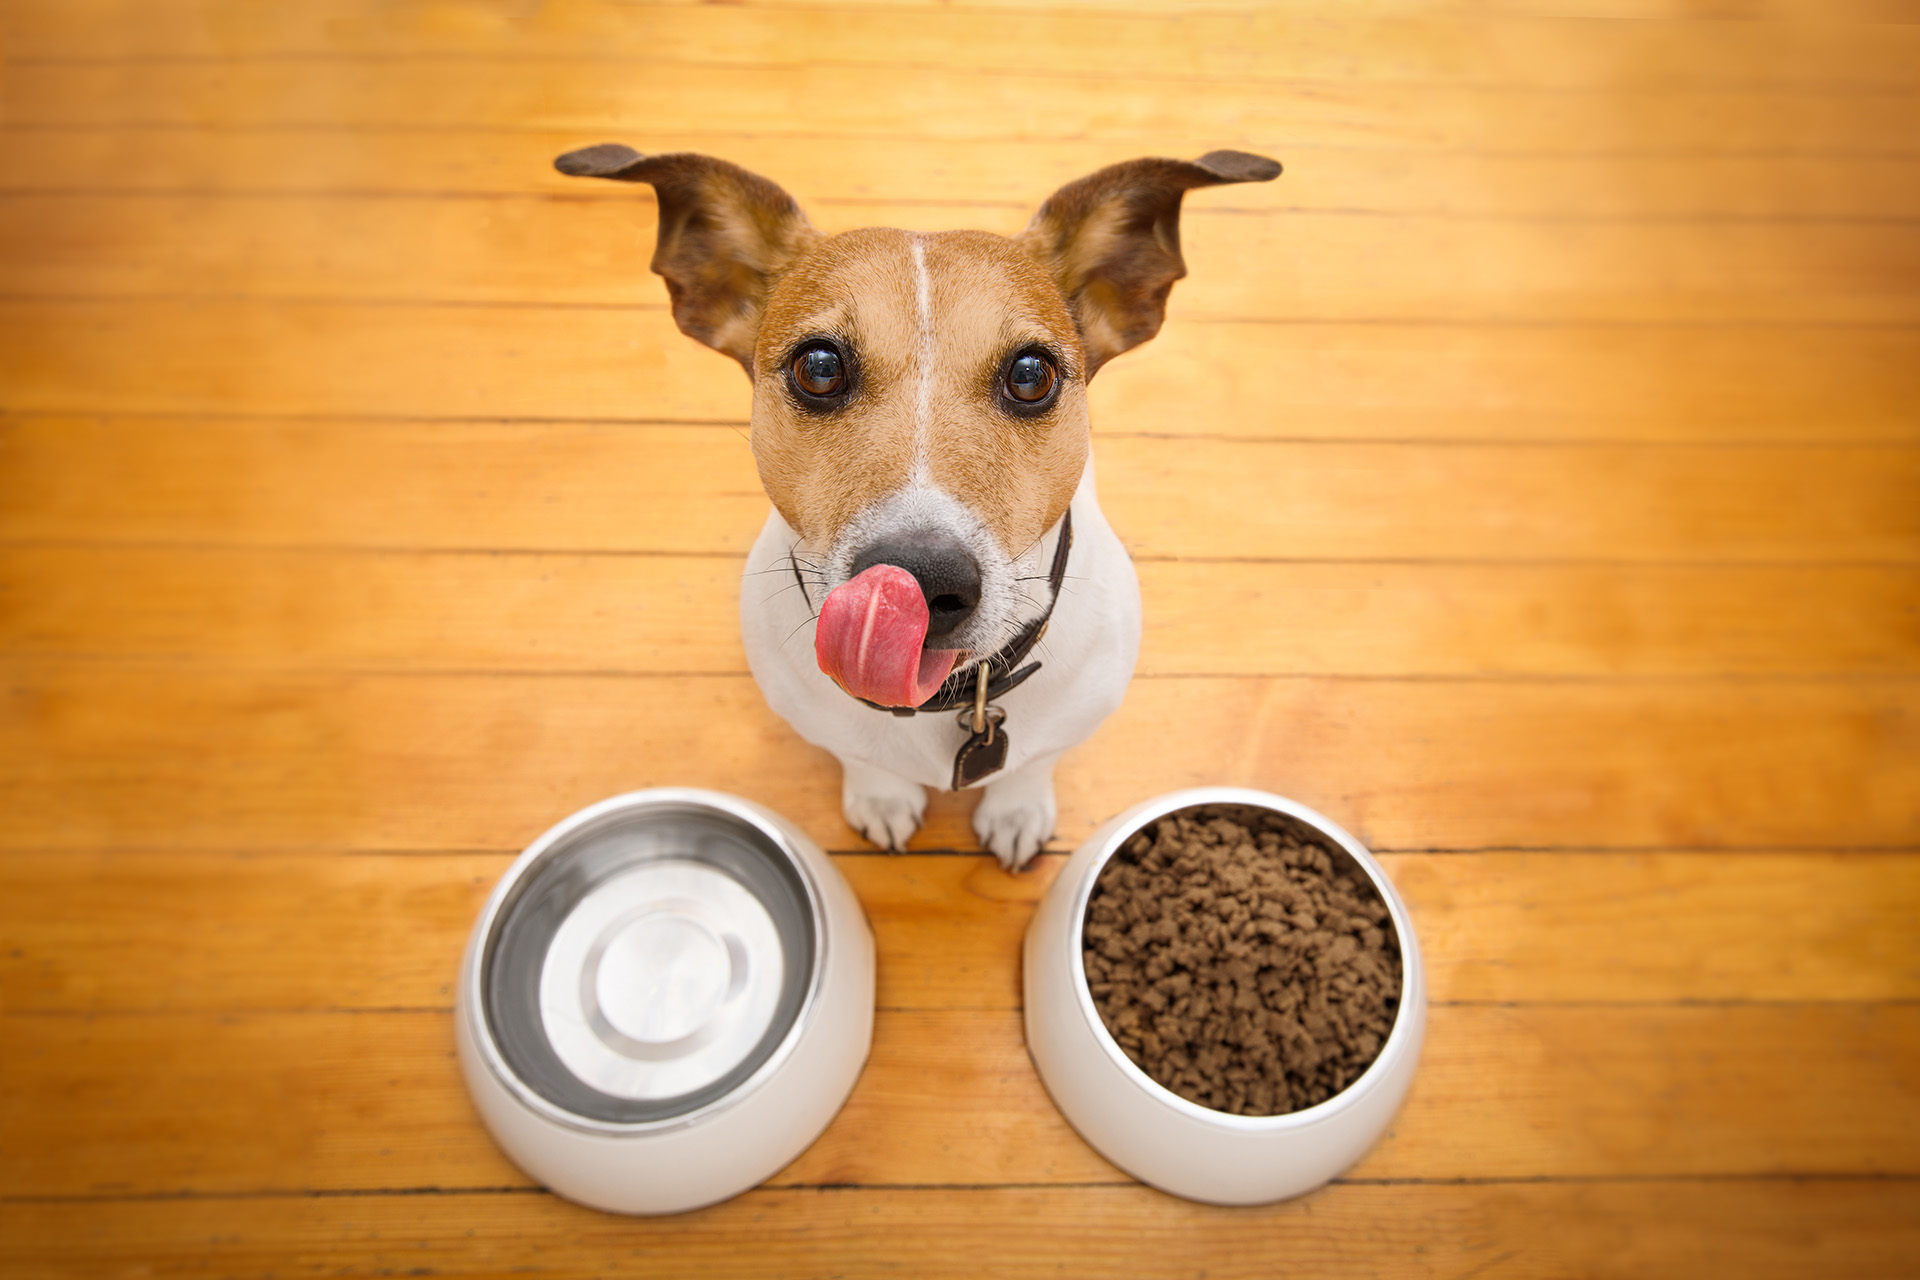 Una investigación descubrió que existen ciertos aminoácidos que proveen los alimentos, que pueden alterar el comportamiento del perro (Getty)